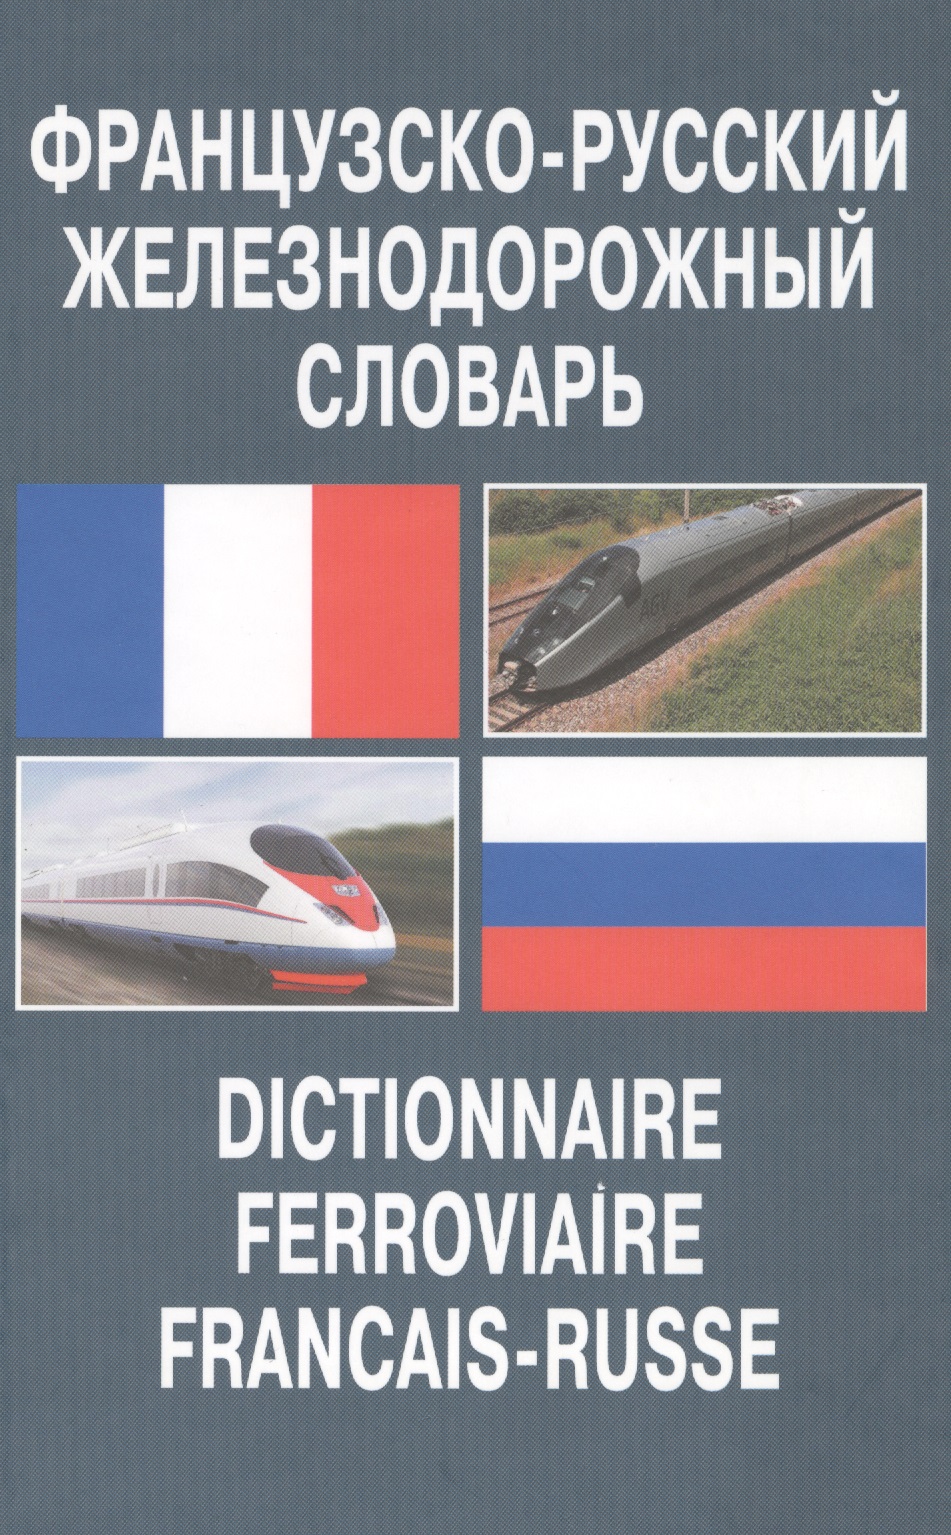 французско русский патентный словарь Французско-русский железнодорожный словарь